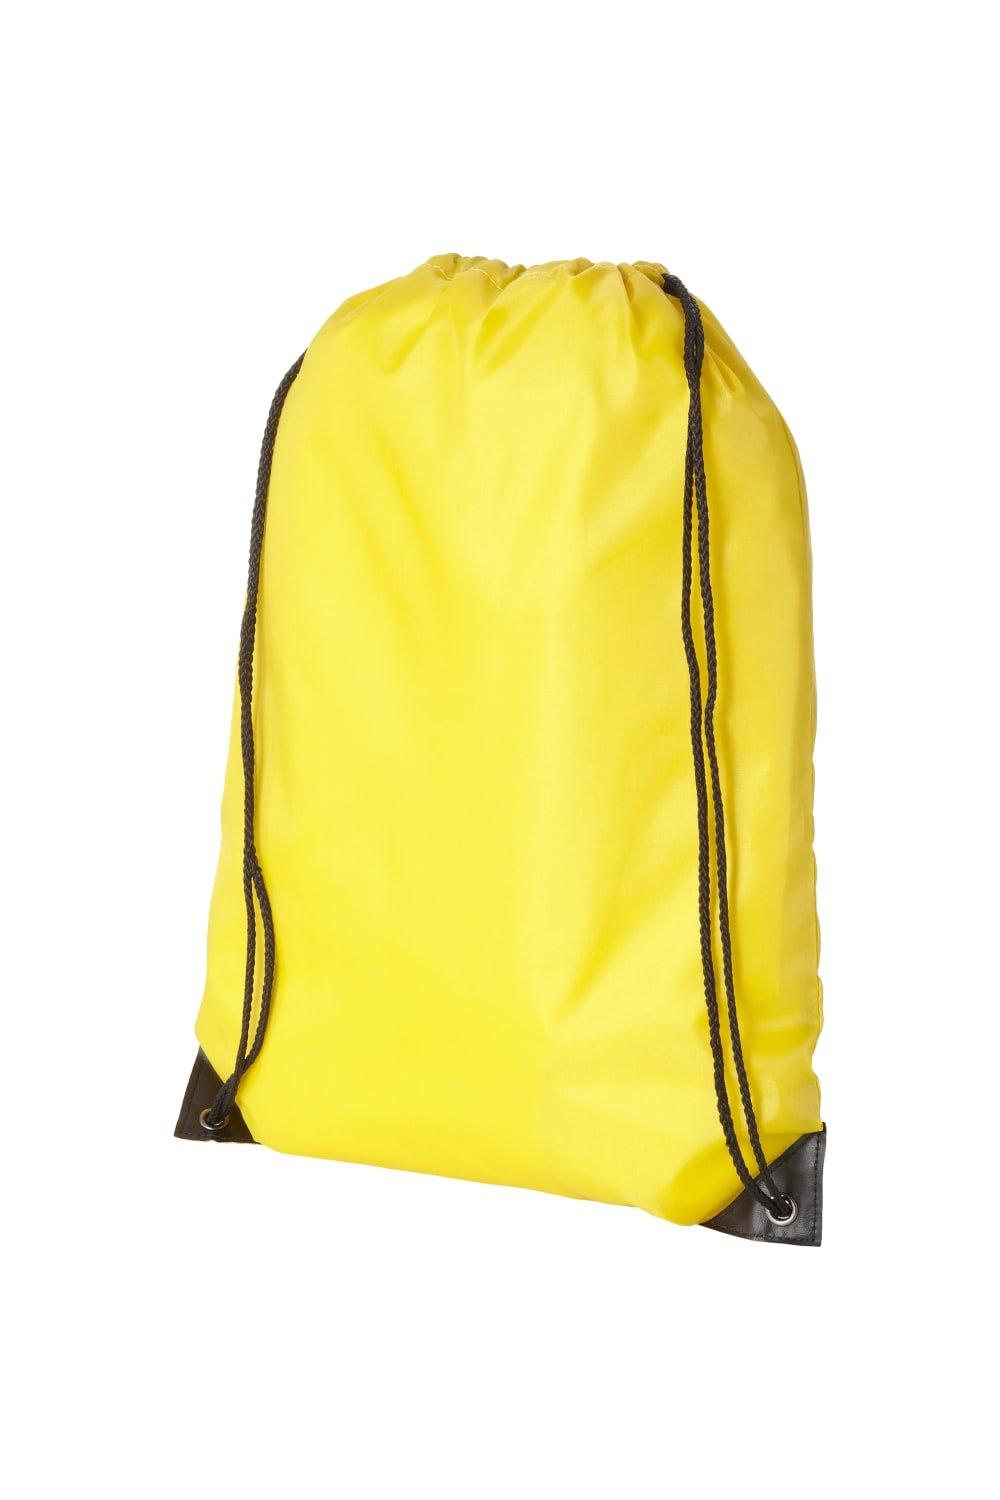 Рюкзак Oriole Премиум Bullet, желтый холщовый рюкзак на шнурке модный школьный рюкзак повседневный рюкзак на шнурке школьный рюкзак для девочек подростков